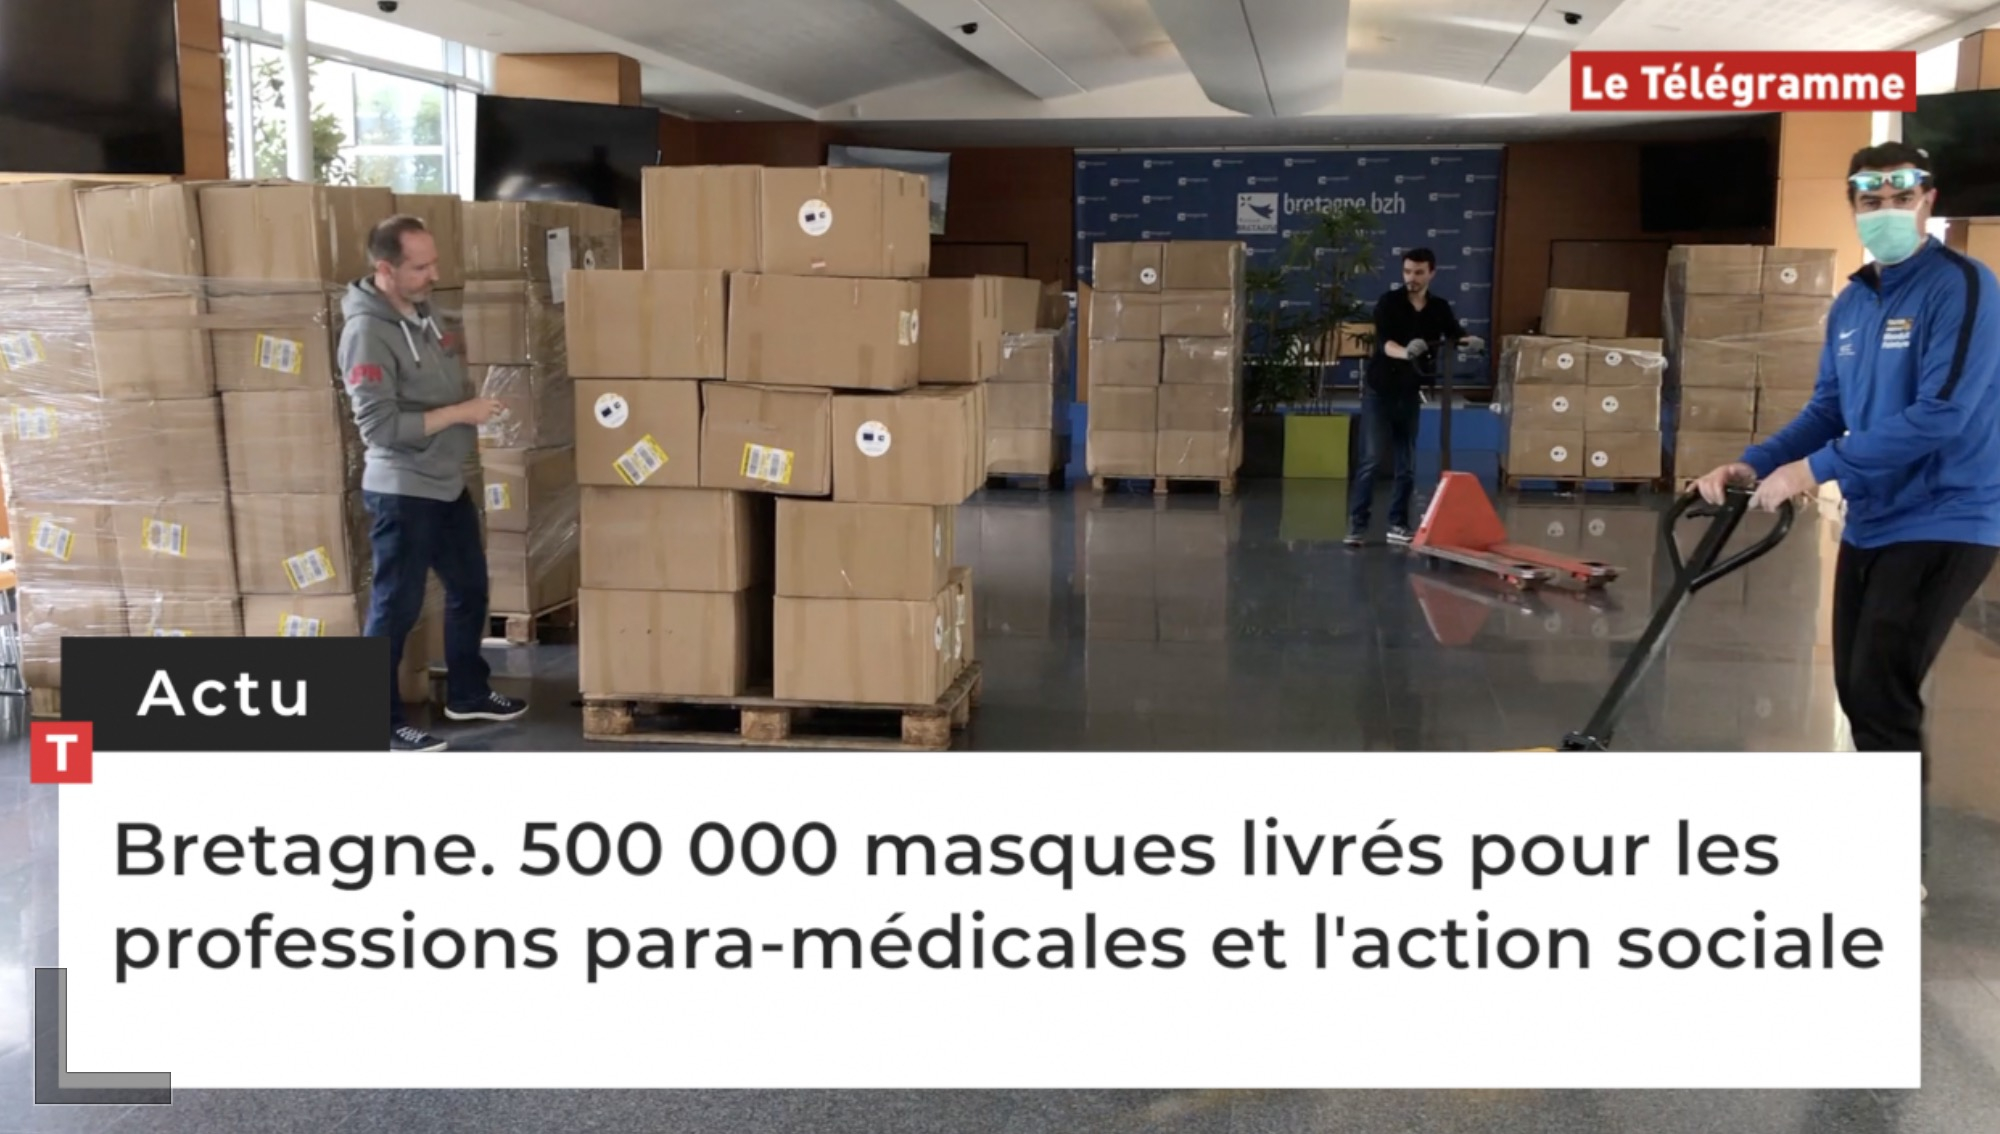 Bretagne. Covid-19 : 500 000 masques livrés pour les professions para-médicales et l'action sociale (Le Télégramme)